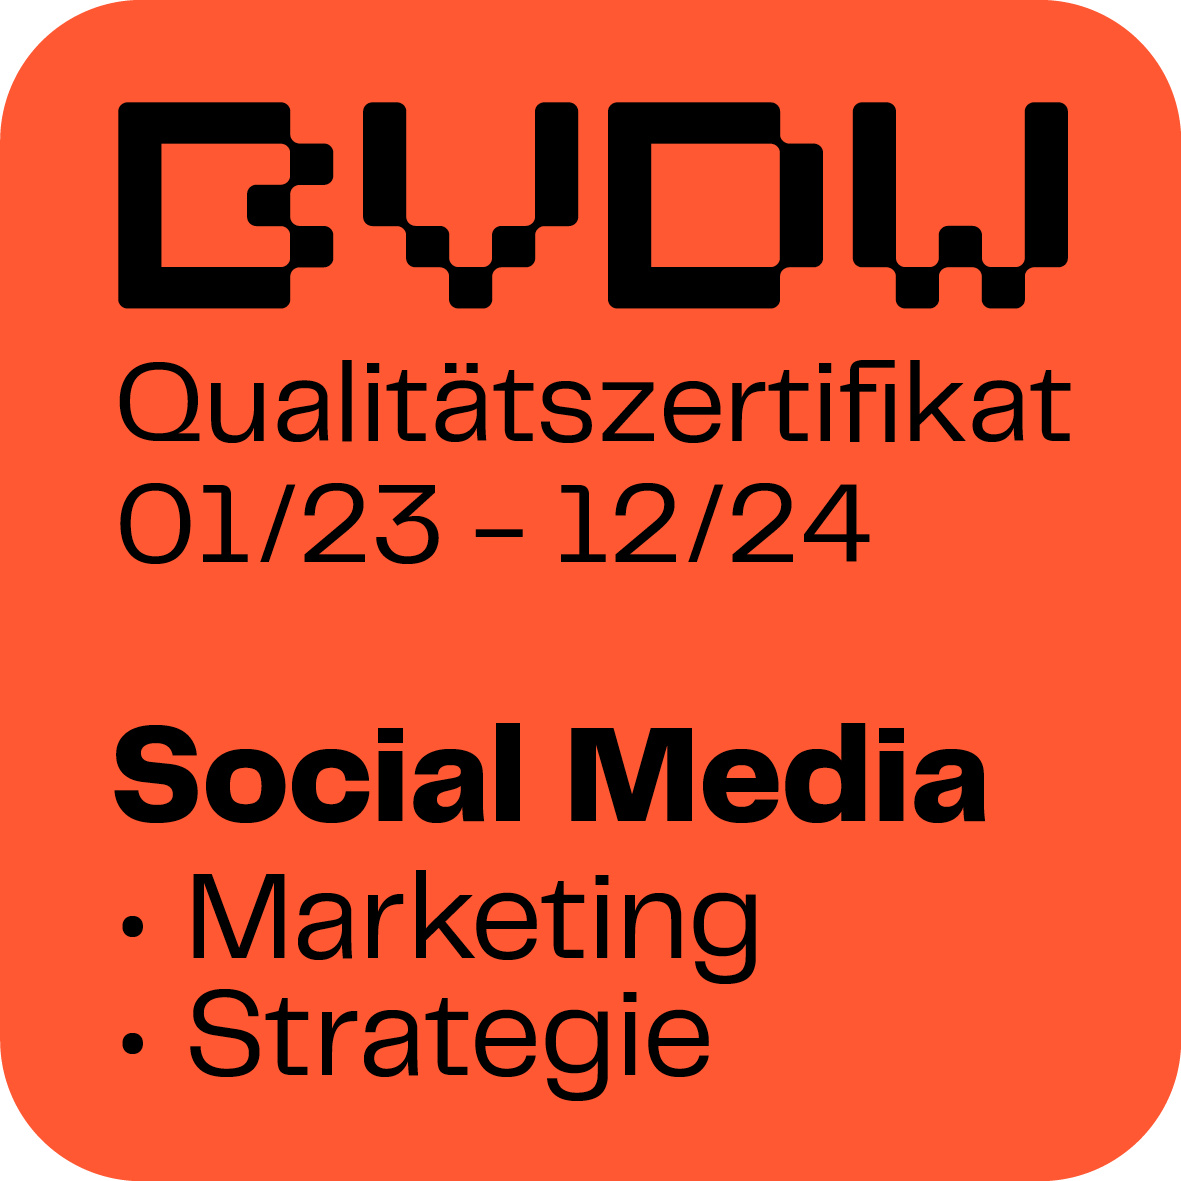 Qualitätssiegel des Bundesverbands für digitale Wirtschaft (BVDW) im Social Media Marketing